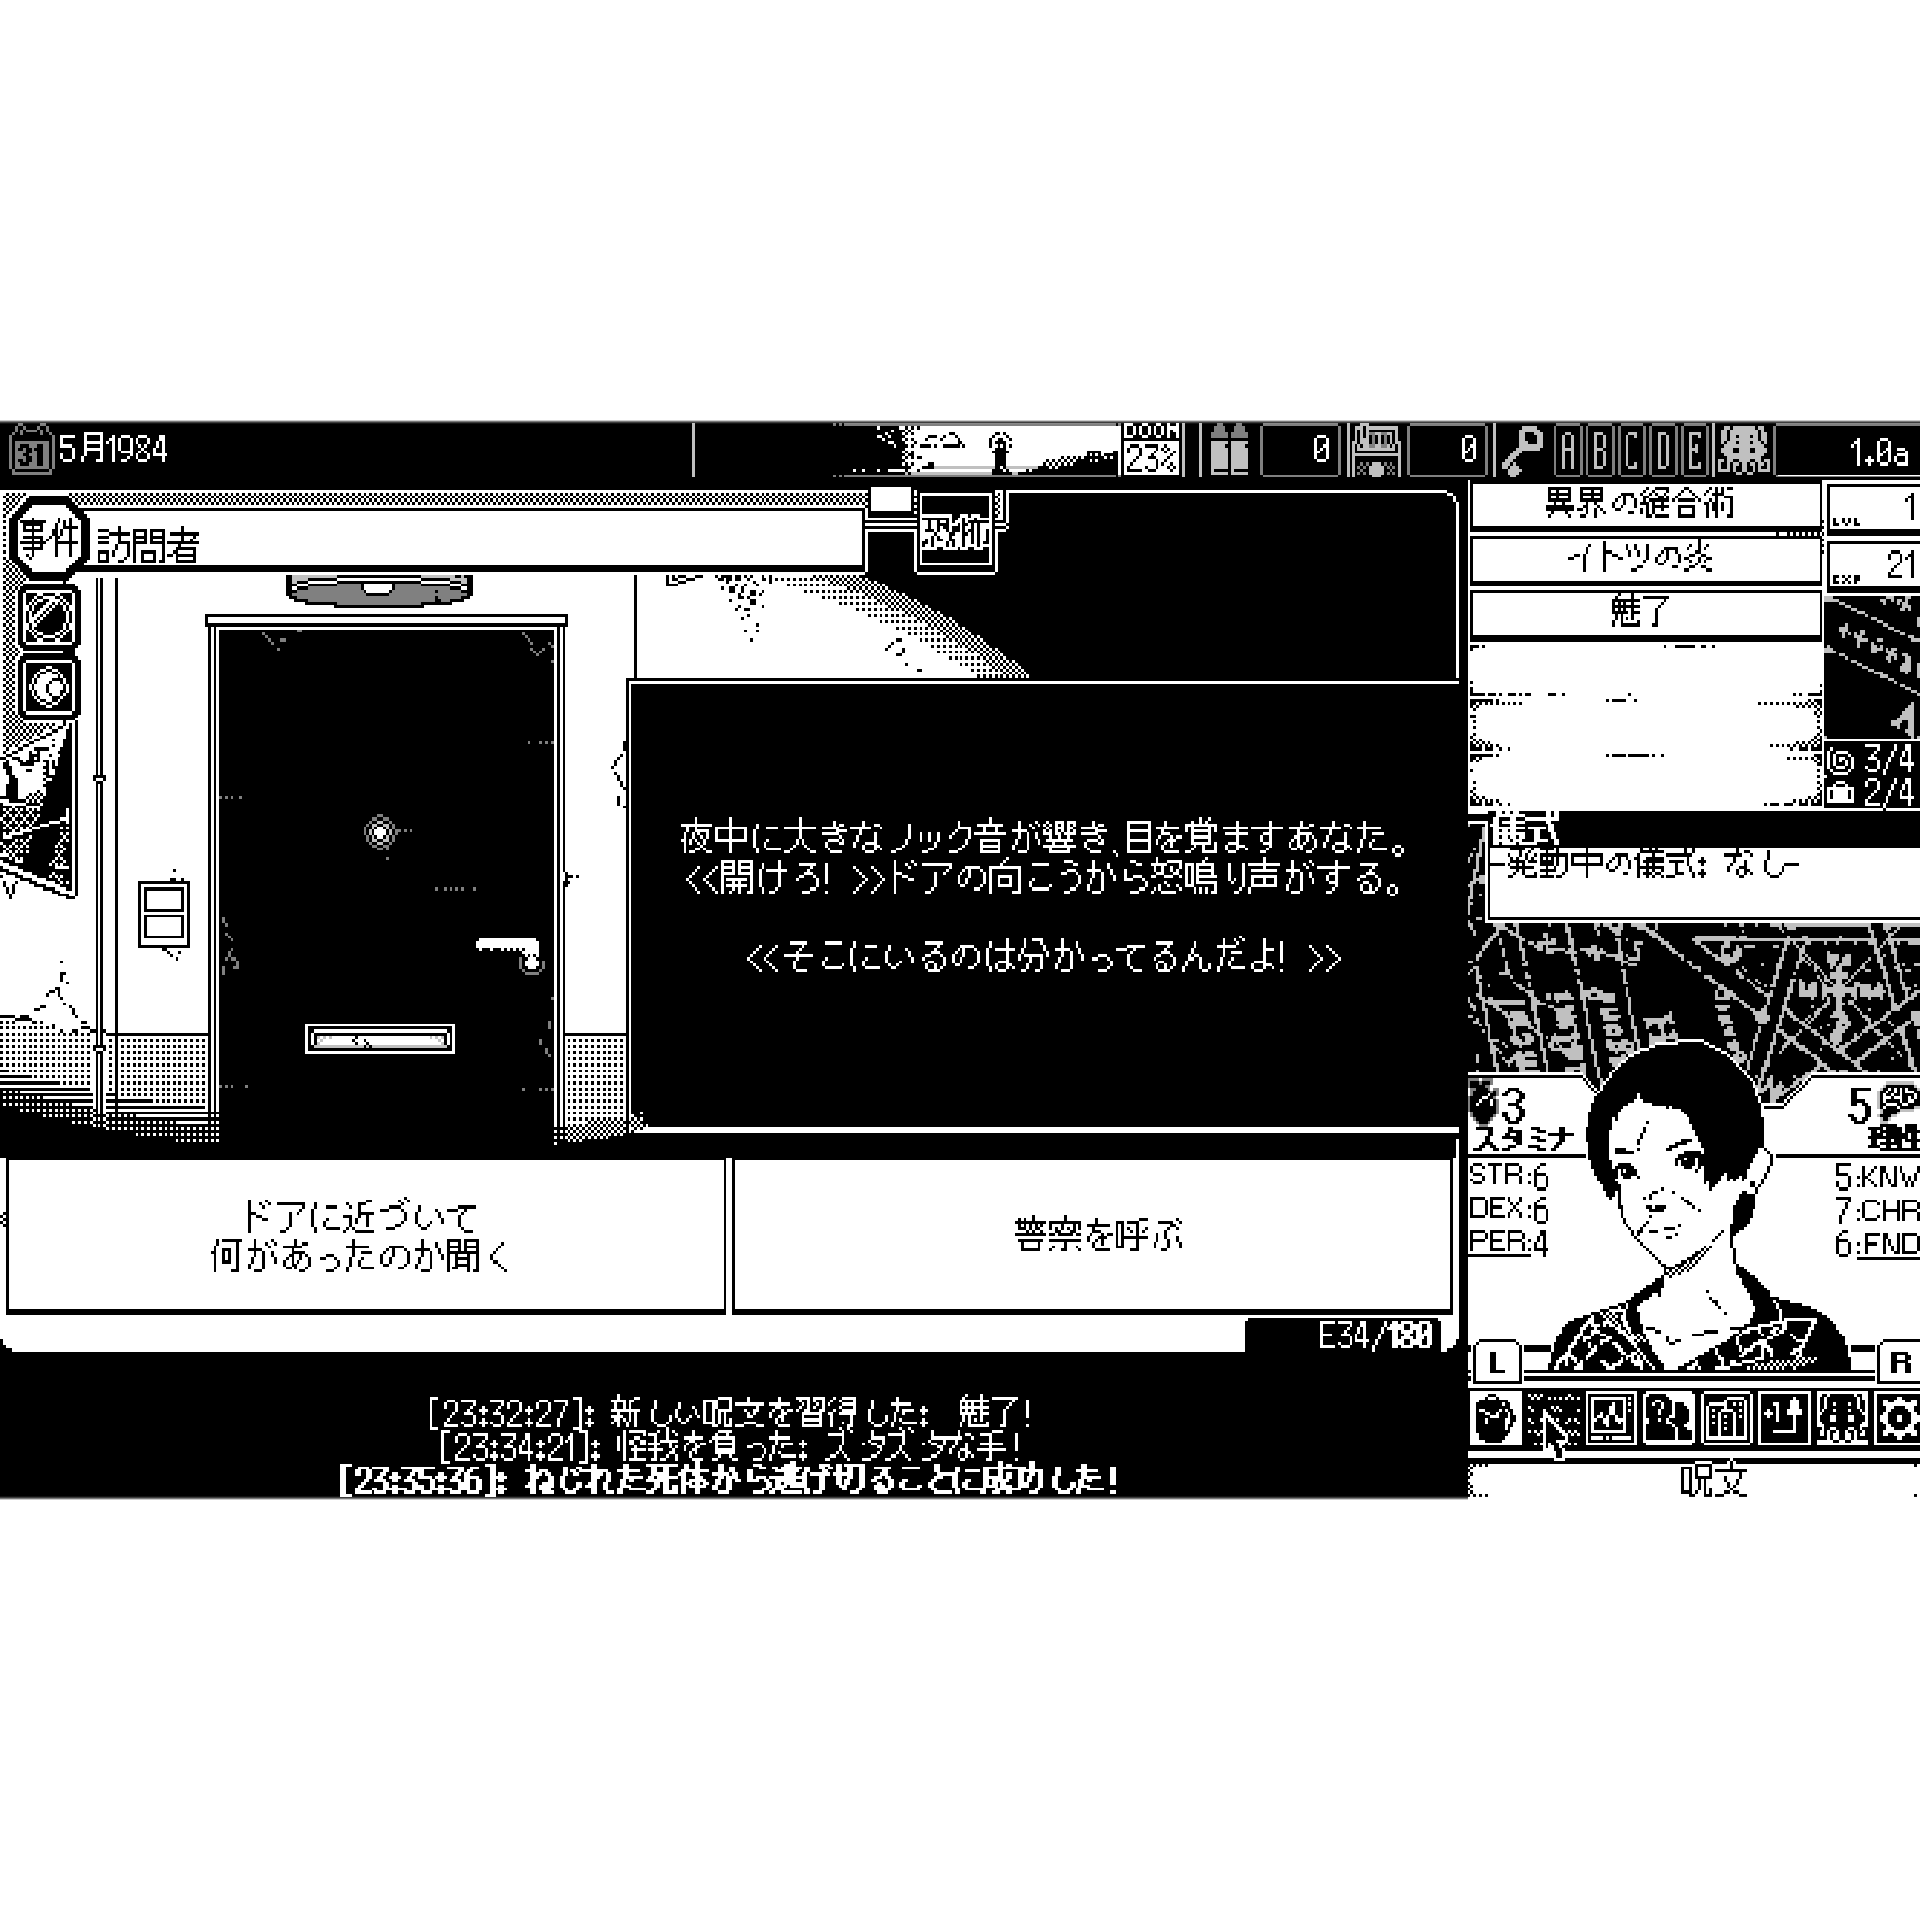 恐怖の世界 [PS4] 初回特典/オリジナル特典付 (数量限定)(日本版)